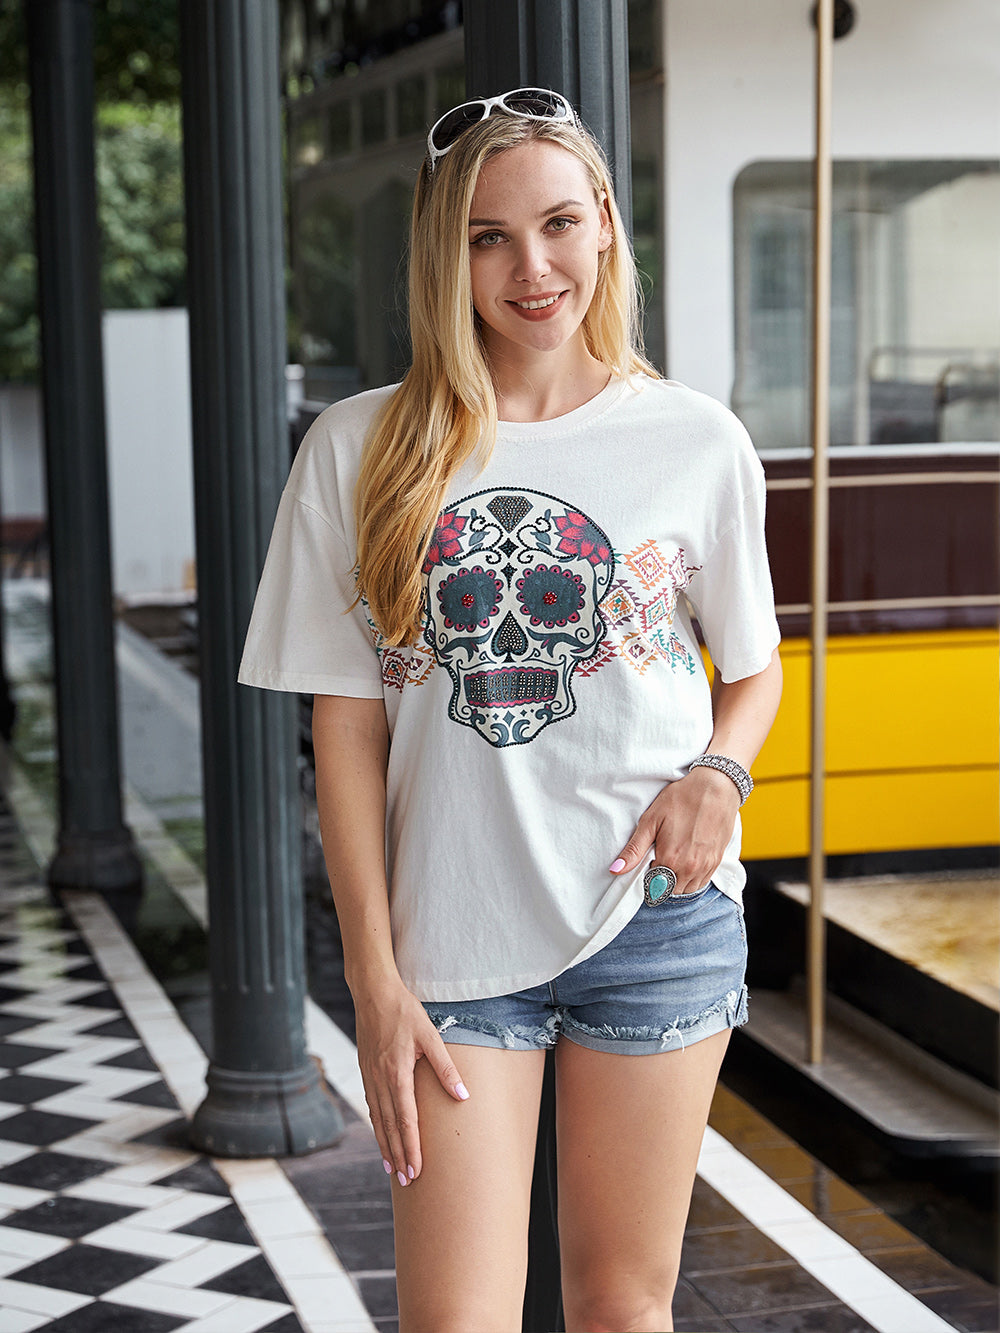 Sugar Skull And Aztec With Rhinestones Women's Short Sleeve T-Shirt - White  / S